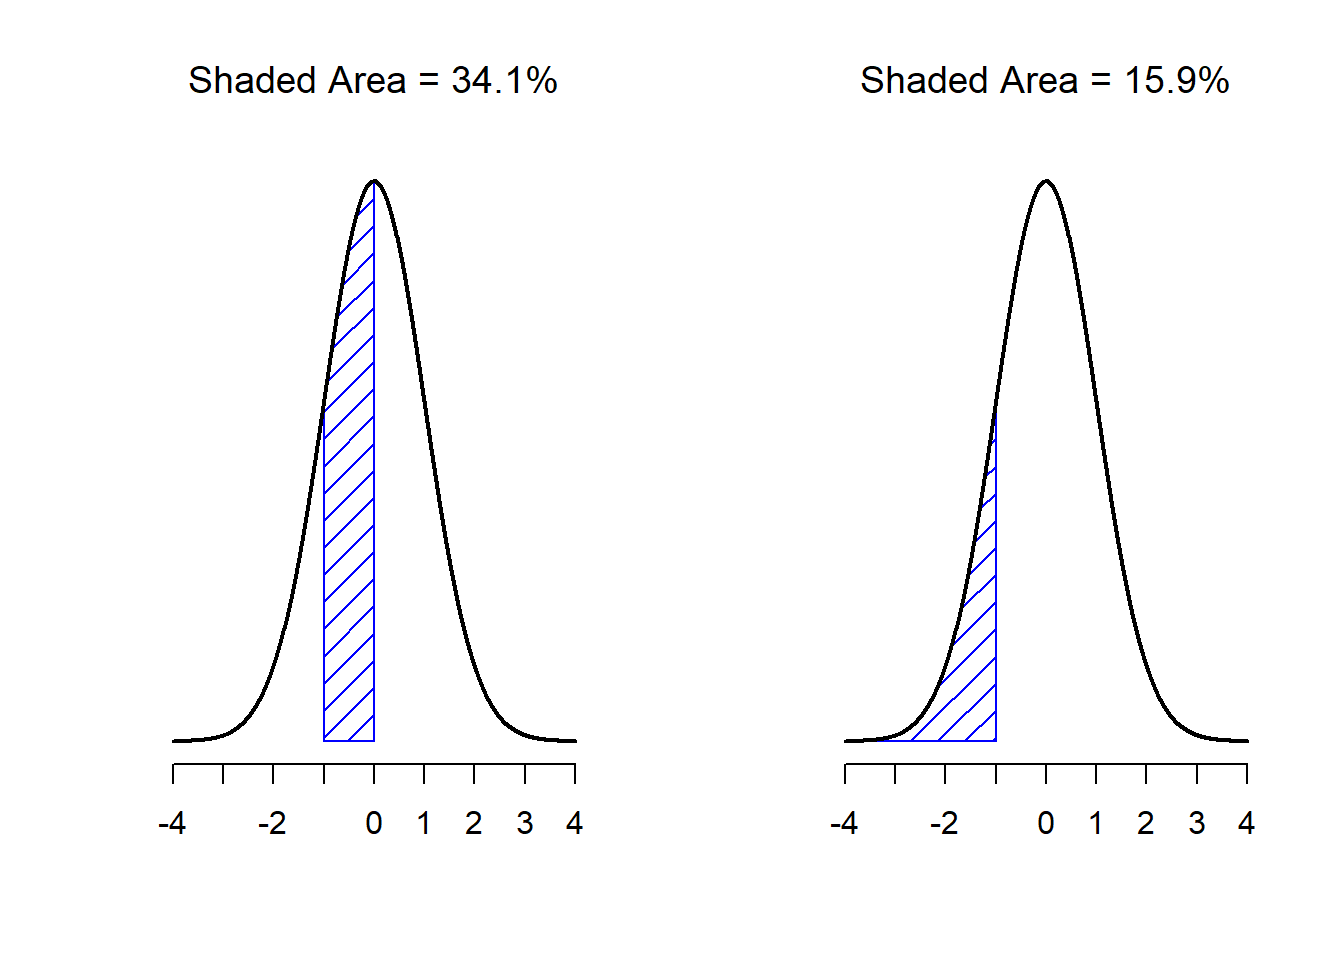 Dos ejemplos más sobre el concepto del 'área bajo la curva'. Existe un 15.9% de probabilidad de que una observación se encuentre 1 desviación estándar o menos por debajo de la media (panel a), y una probabilidad del 34.1% de que una observación sea mayor que una desviación estándar por debajo de la media pero menor que la media (panel b). Si sumamos estos dos valores, obtendremos 15.9% + 34.1% = 50%. Para datos que estén normalmente distribuidos, existe un 50% de probabilidad de que una observación caiga por debajo de la media. Esto implica que existe un 50% de probabilidad de que caiga por encima de la media.